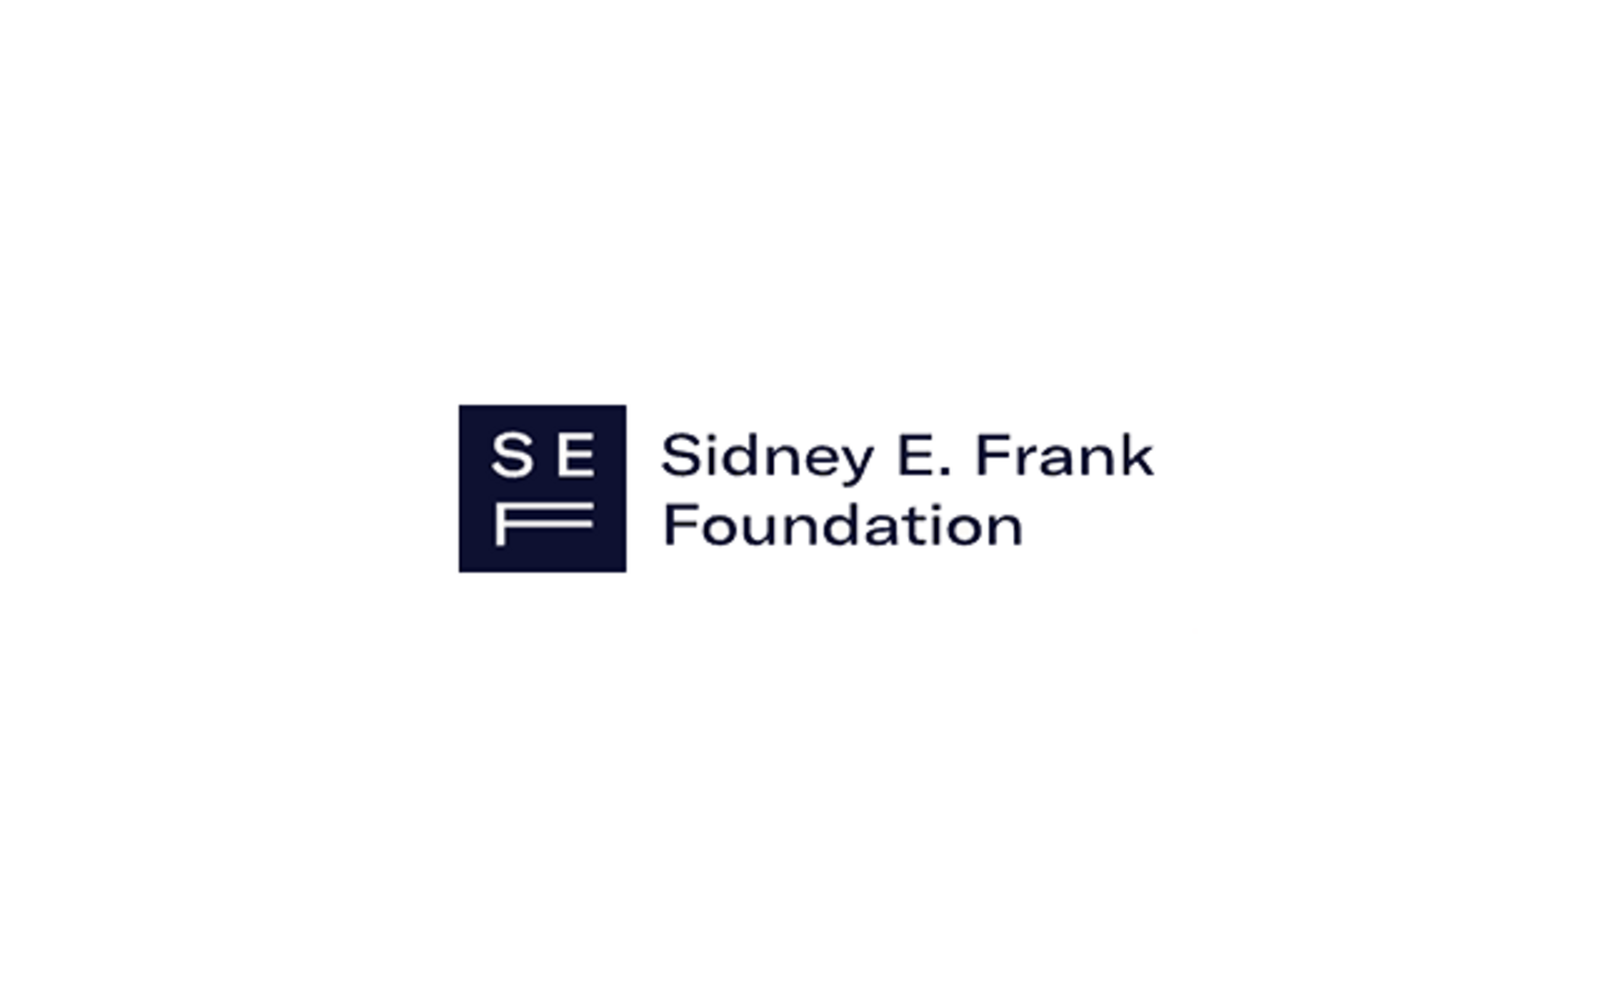 Sidney E. Frank Foundation